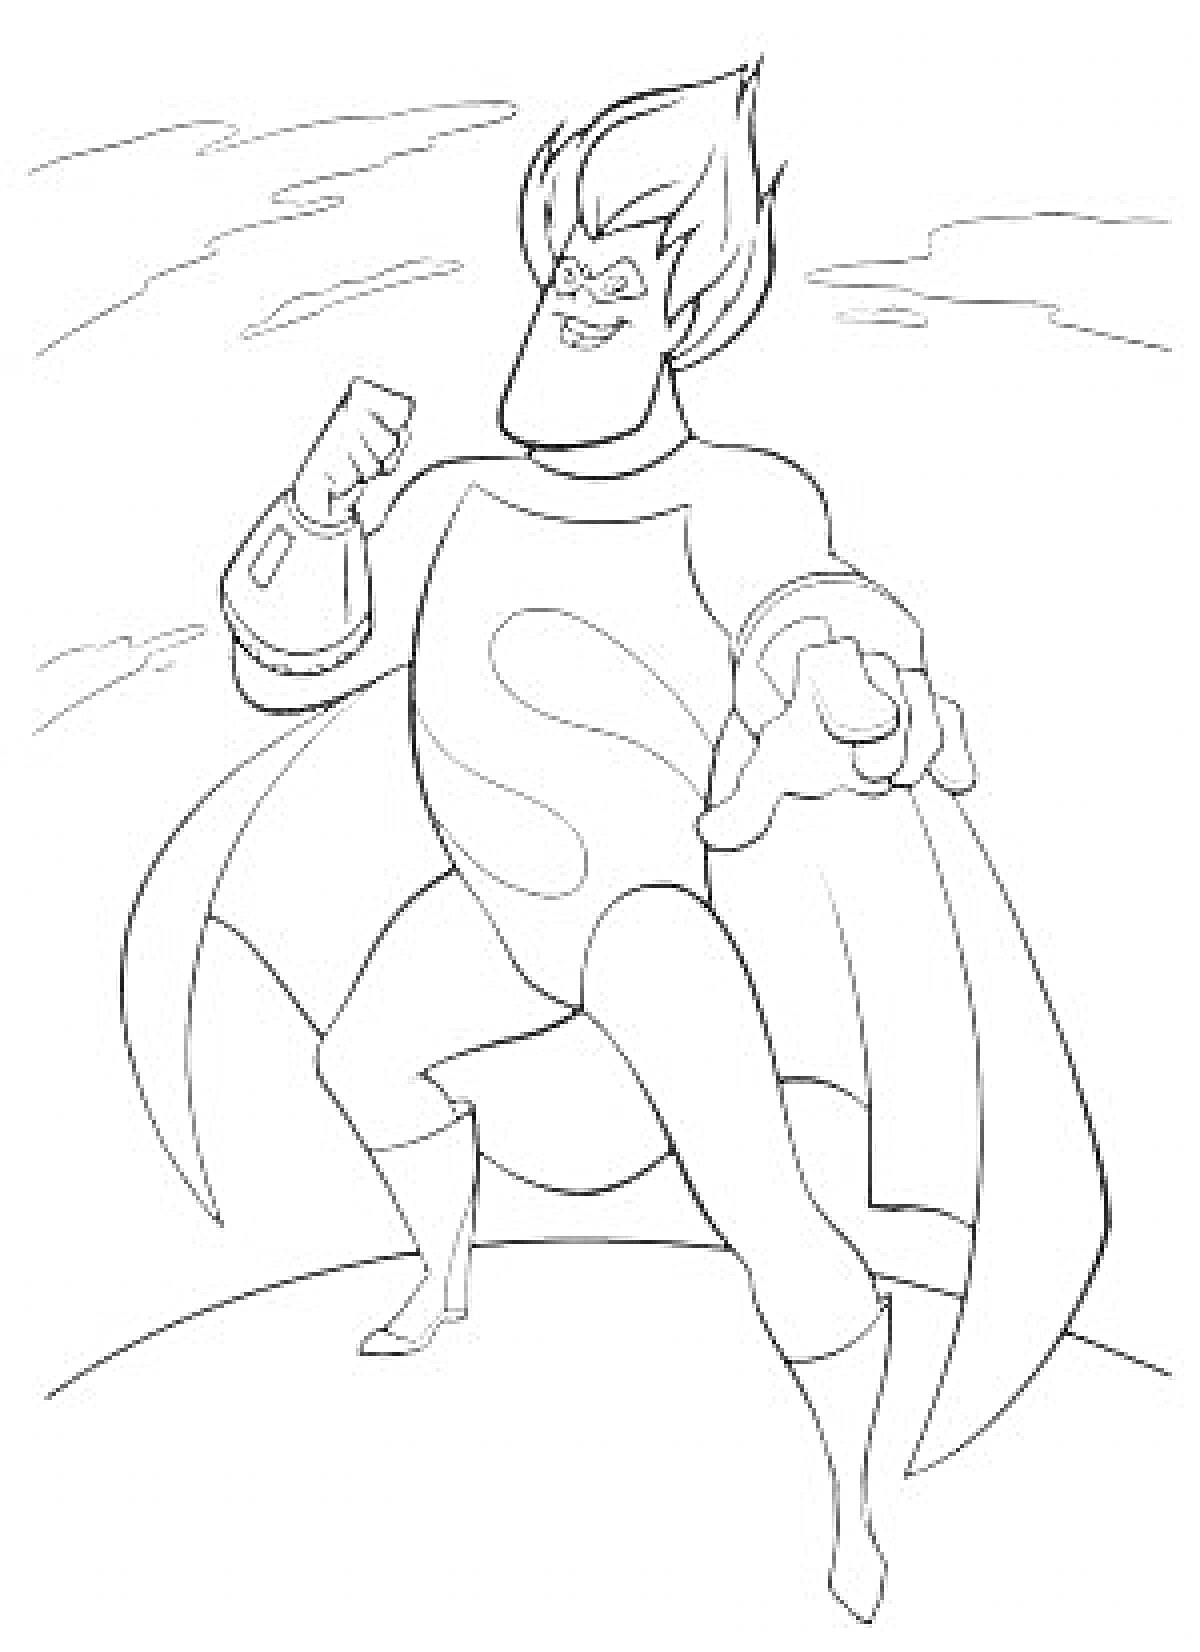 Супергерой из мультфильма «Суперсемейка» в боевой стойке на фоне облаков